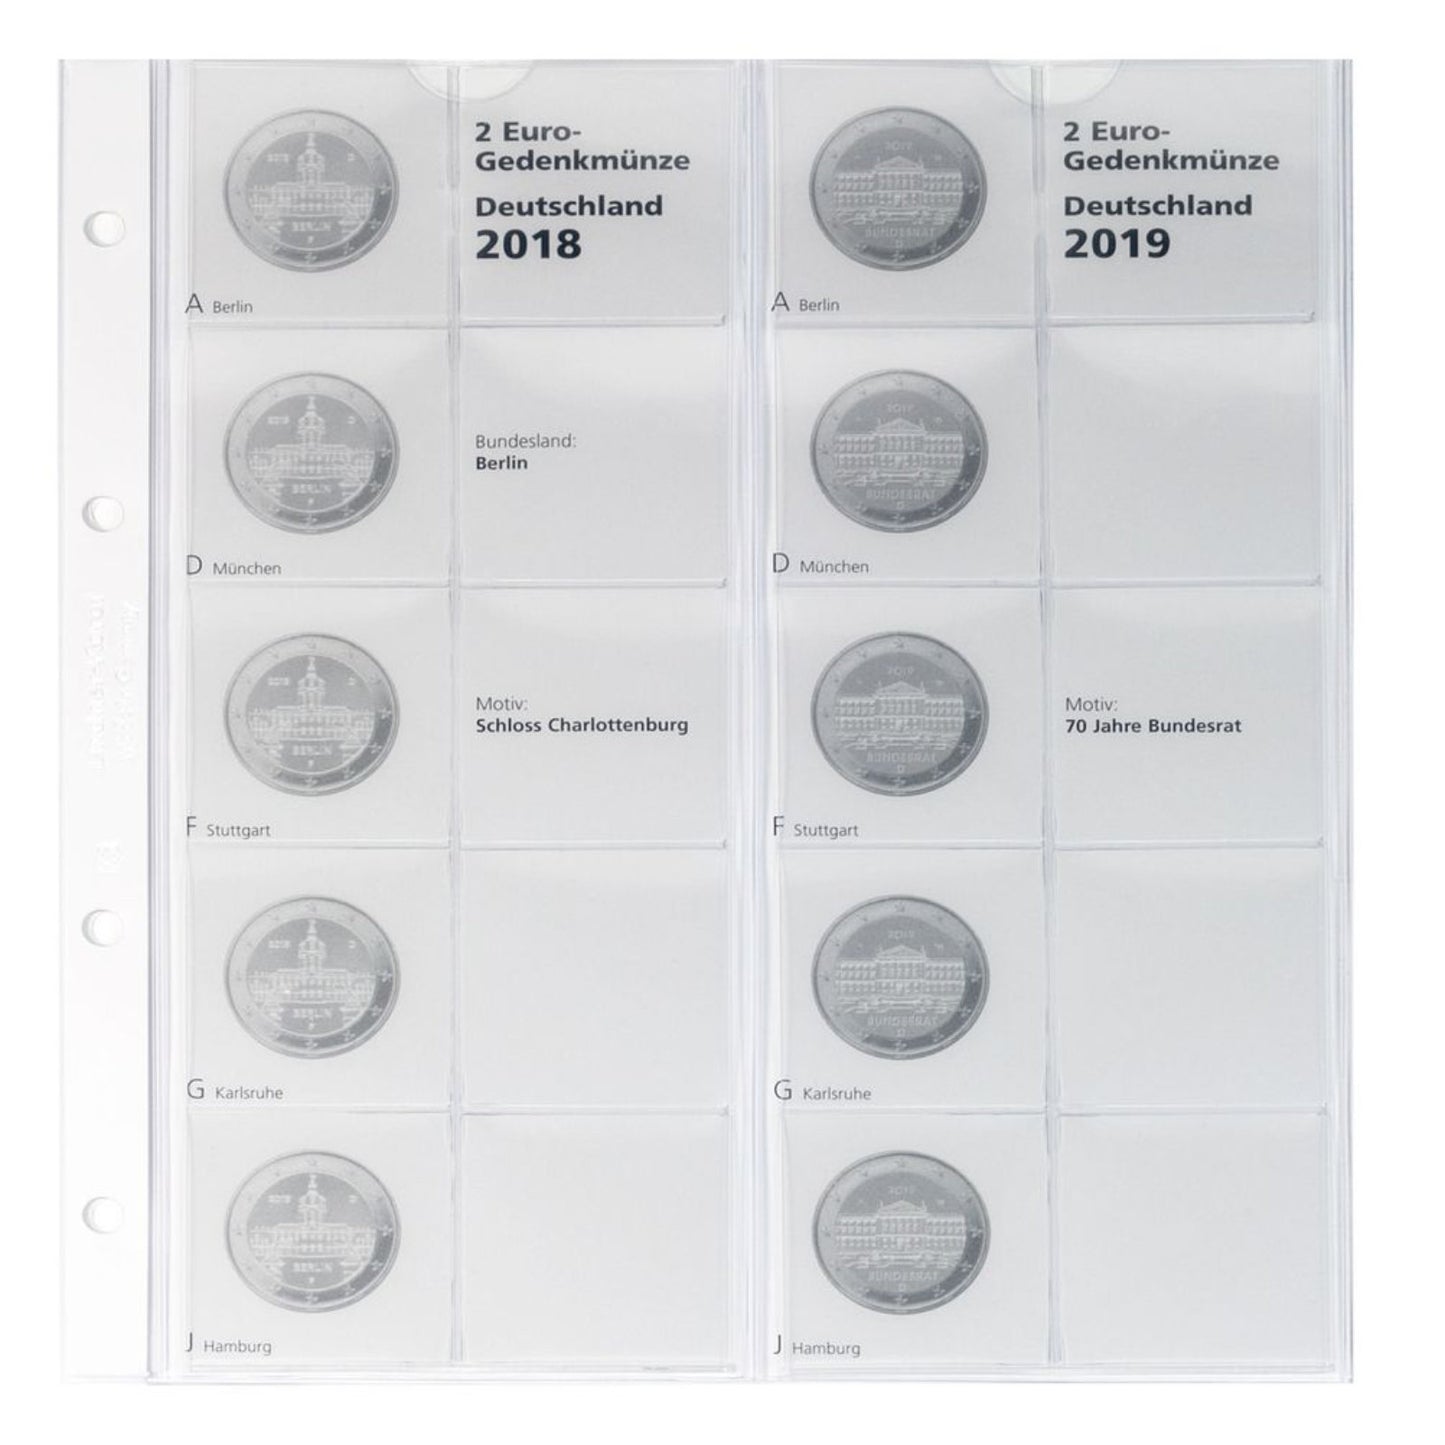 Münzalbum für 2 Euro Sammlermünzen "Deutsche Bundesländer" 2006 - 2022